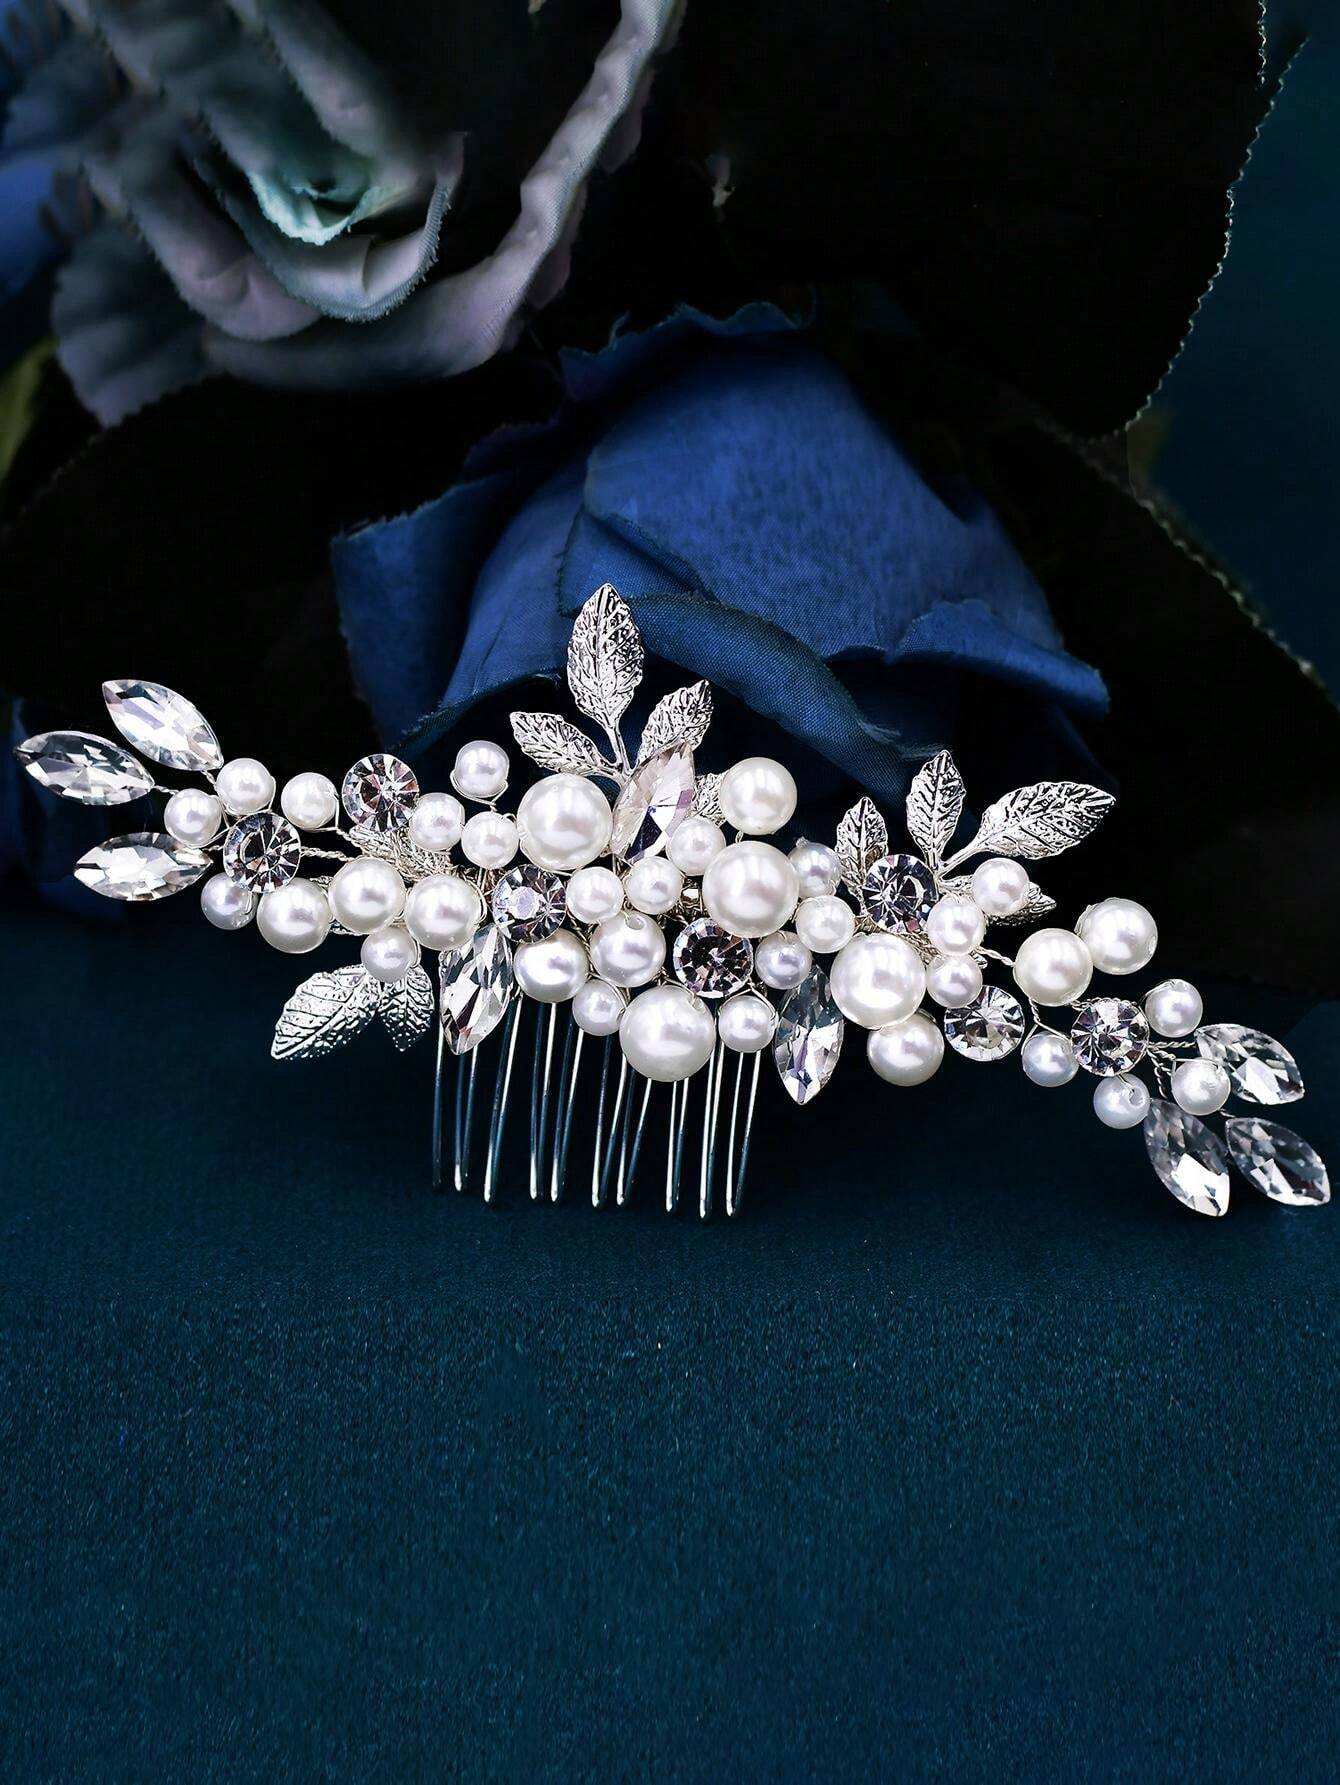 Stort Hårsmykke med Hvide Perler, Sølv Blade & Krystalperler